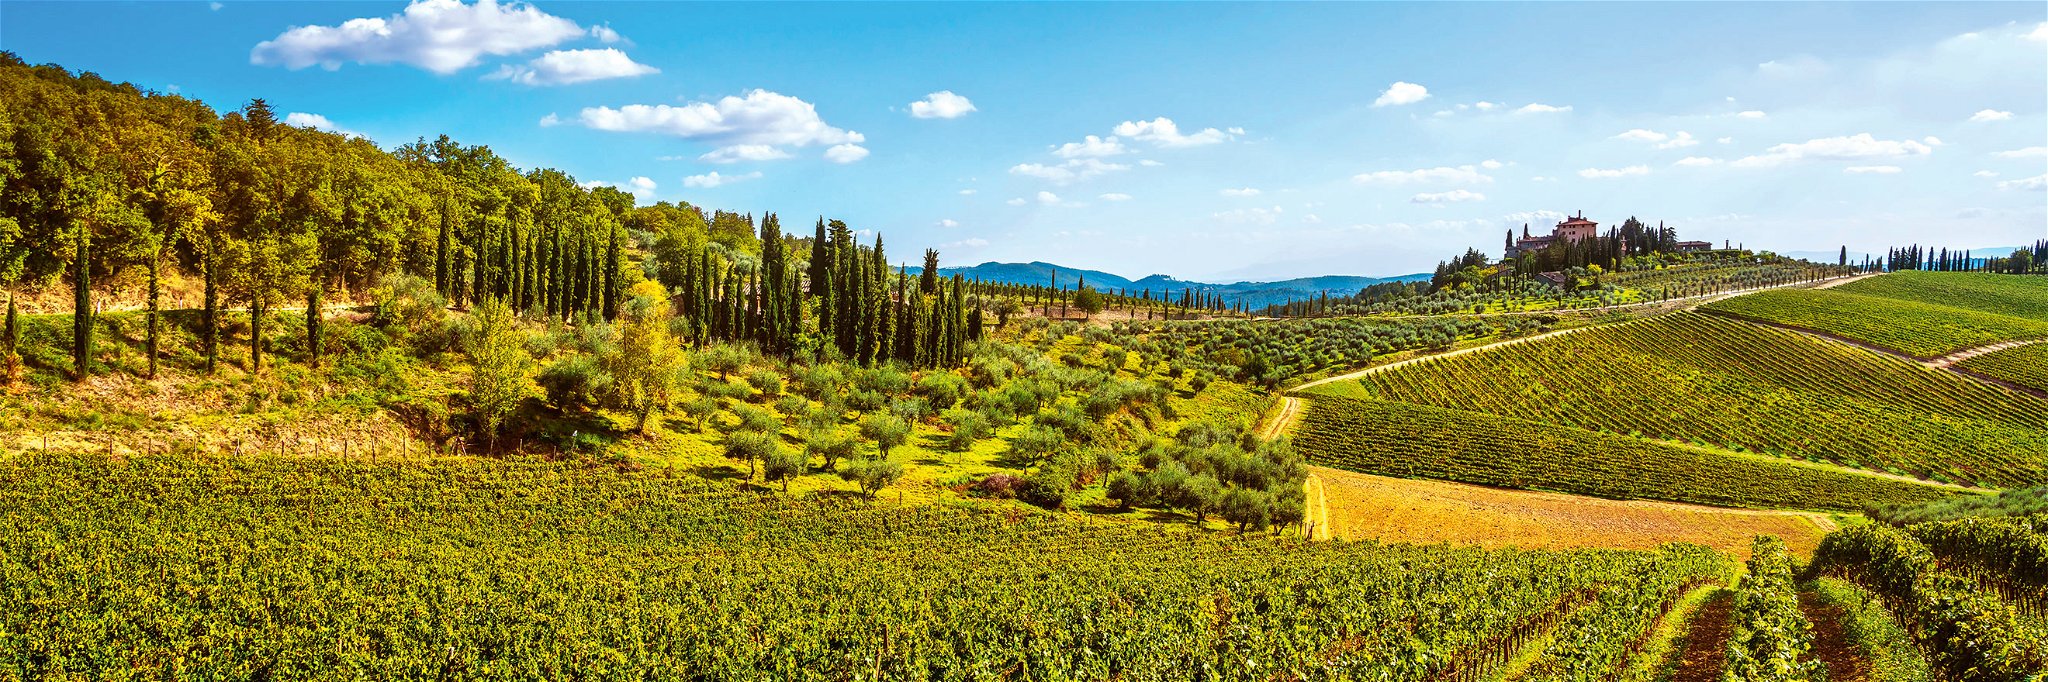 Wald und Weinberge prägen die Landschaft des Chianti Classico.